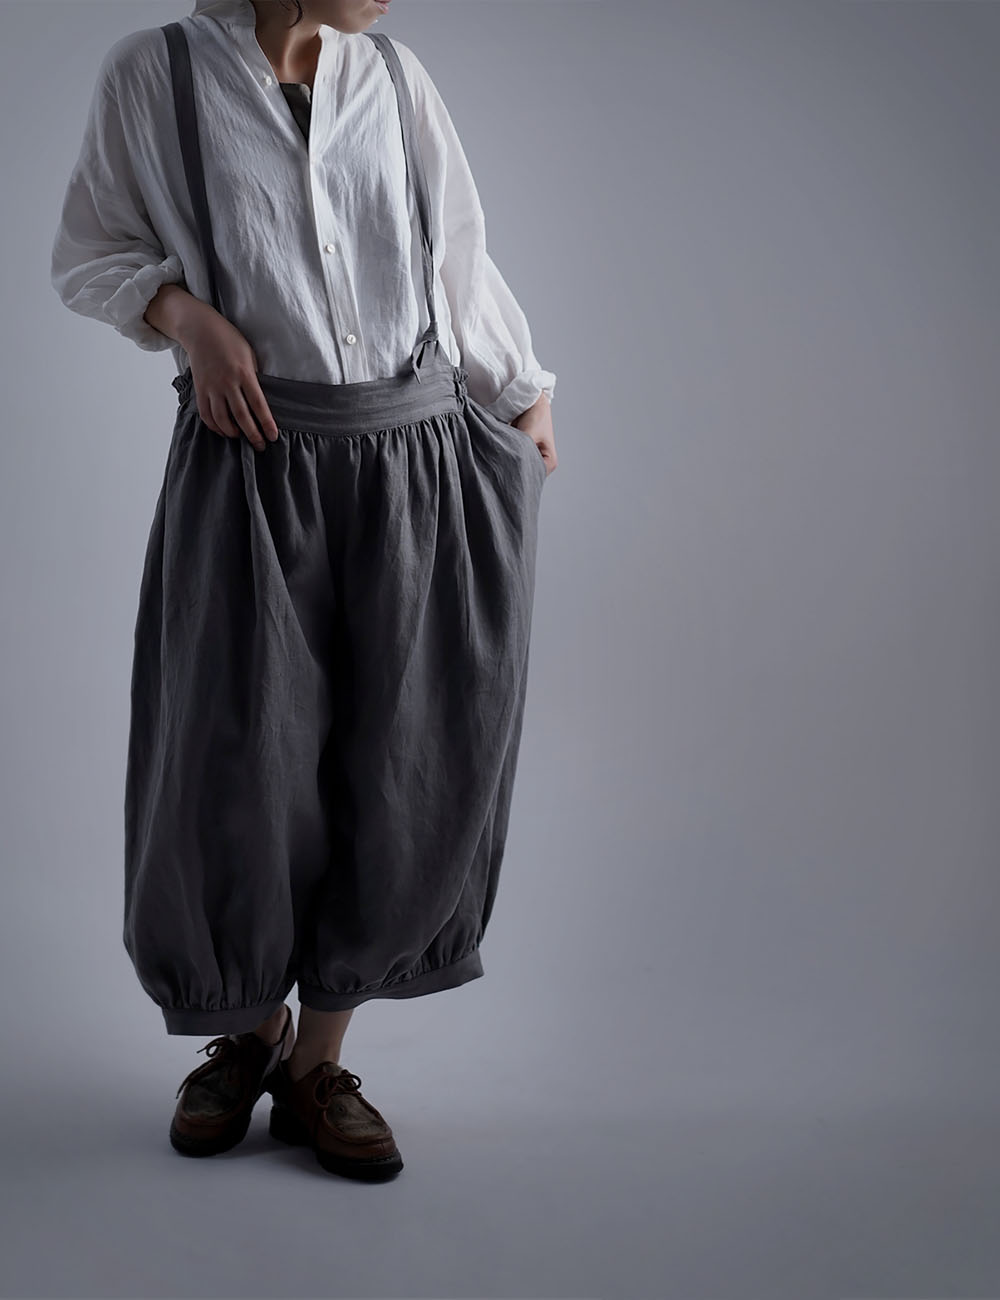 【wafu】Linen Pants サロペット アラジンパンツ /鈍色(にびいろ) b003d-nib1